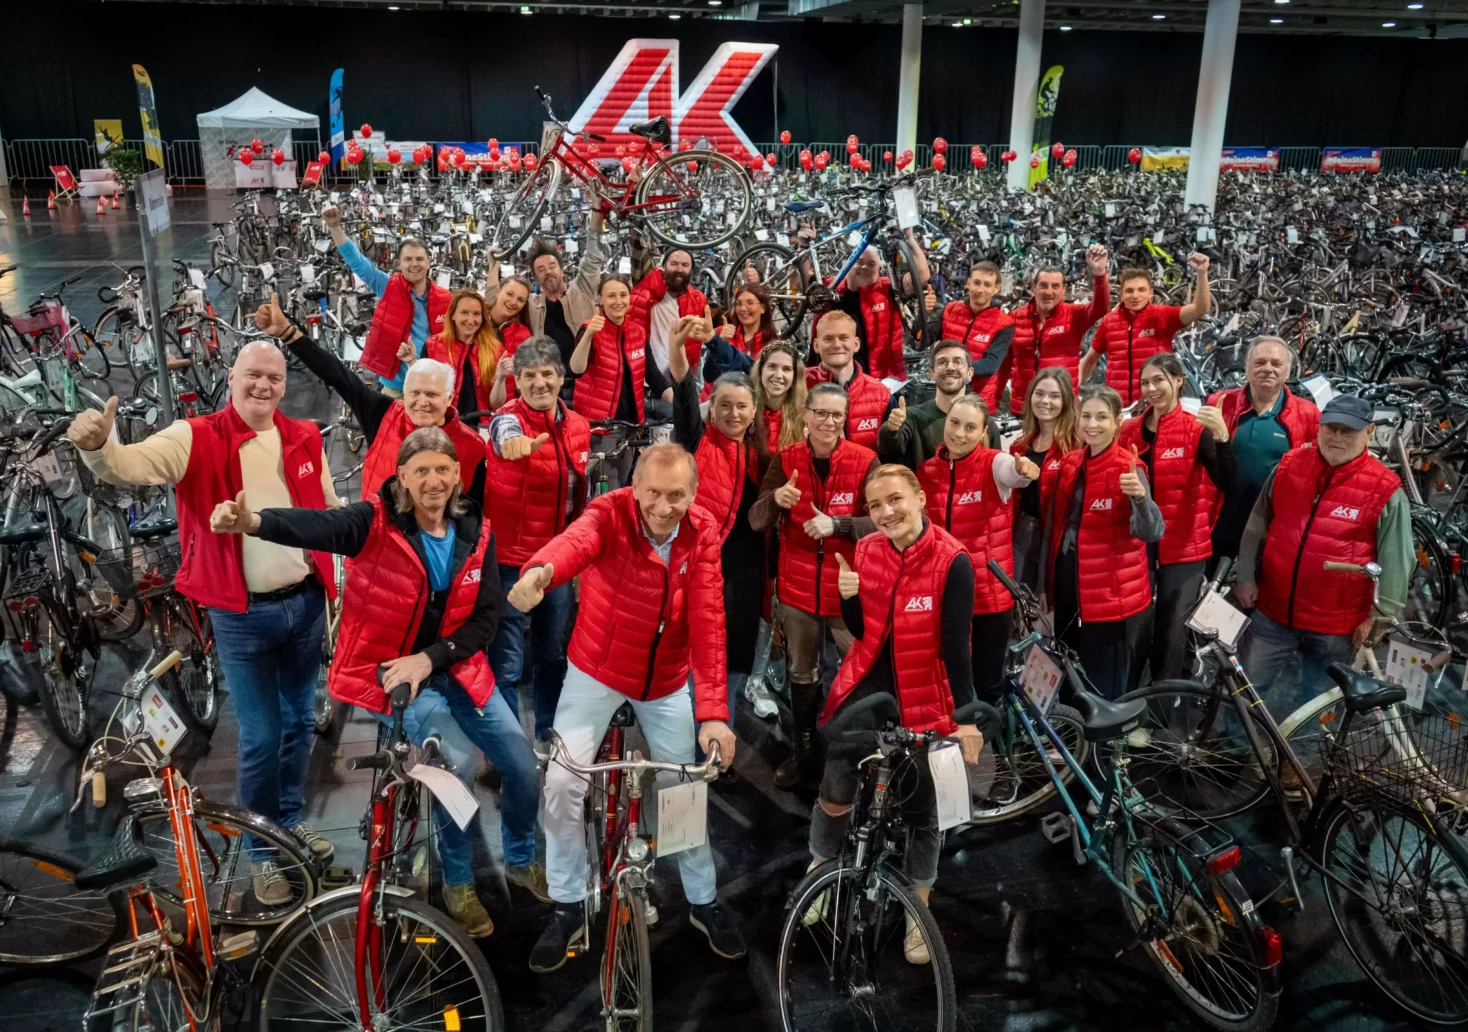 5.000 Besucher erwartet: AK-Fahrradbörse zeigt sich äußerst beliebt